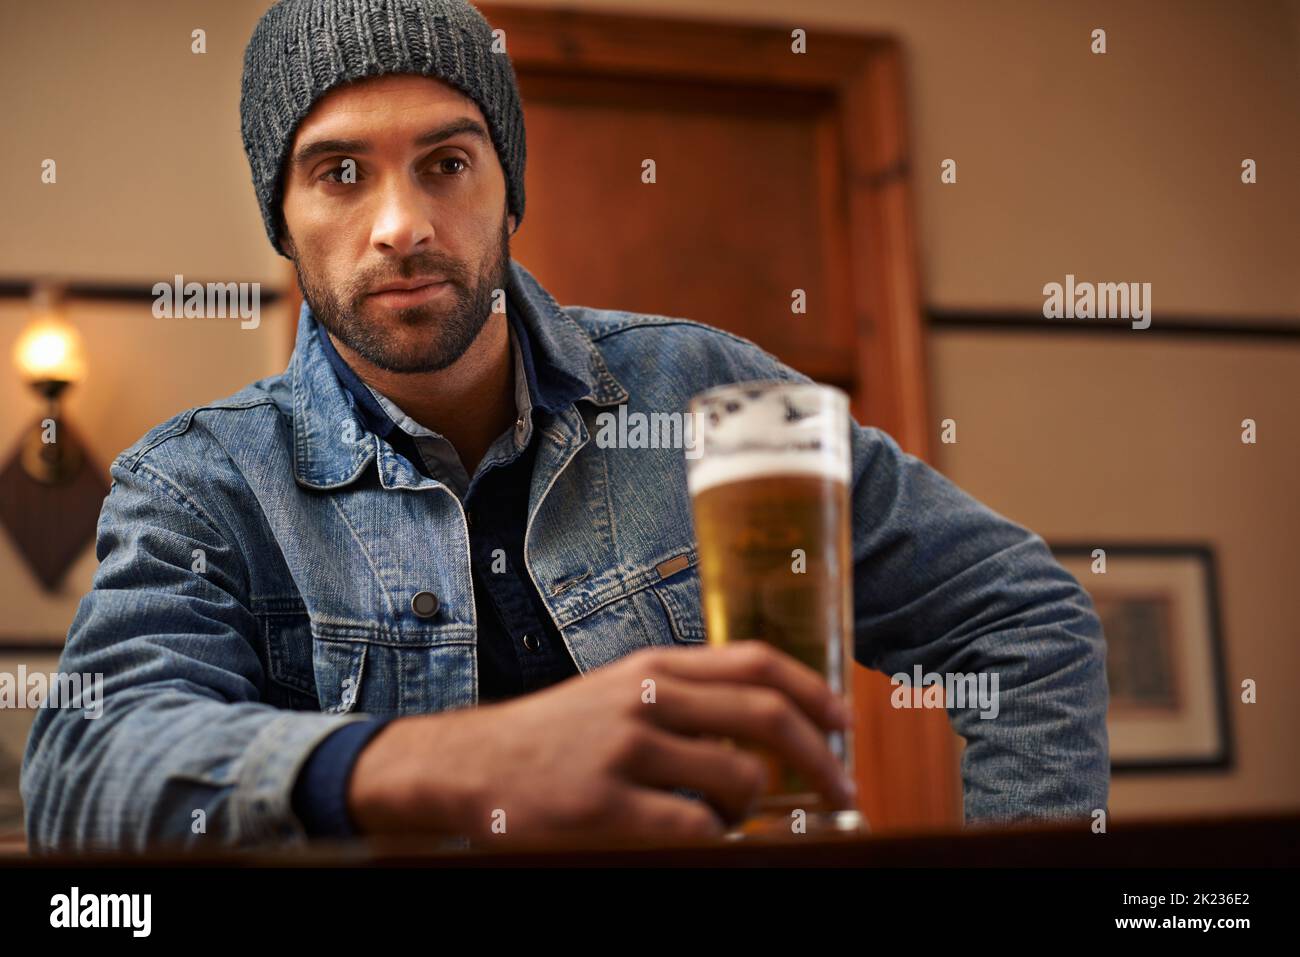 Mantenere la calma e bere birra. Ritratto di un bel giovane che beve una birra al bar. Foto Stock